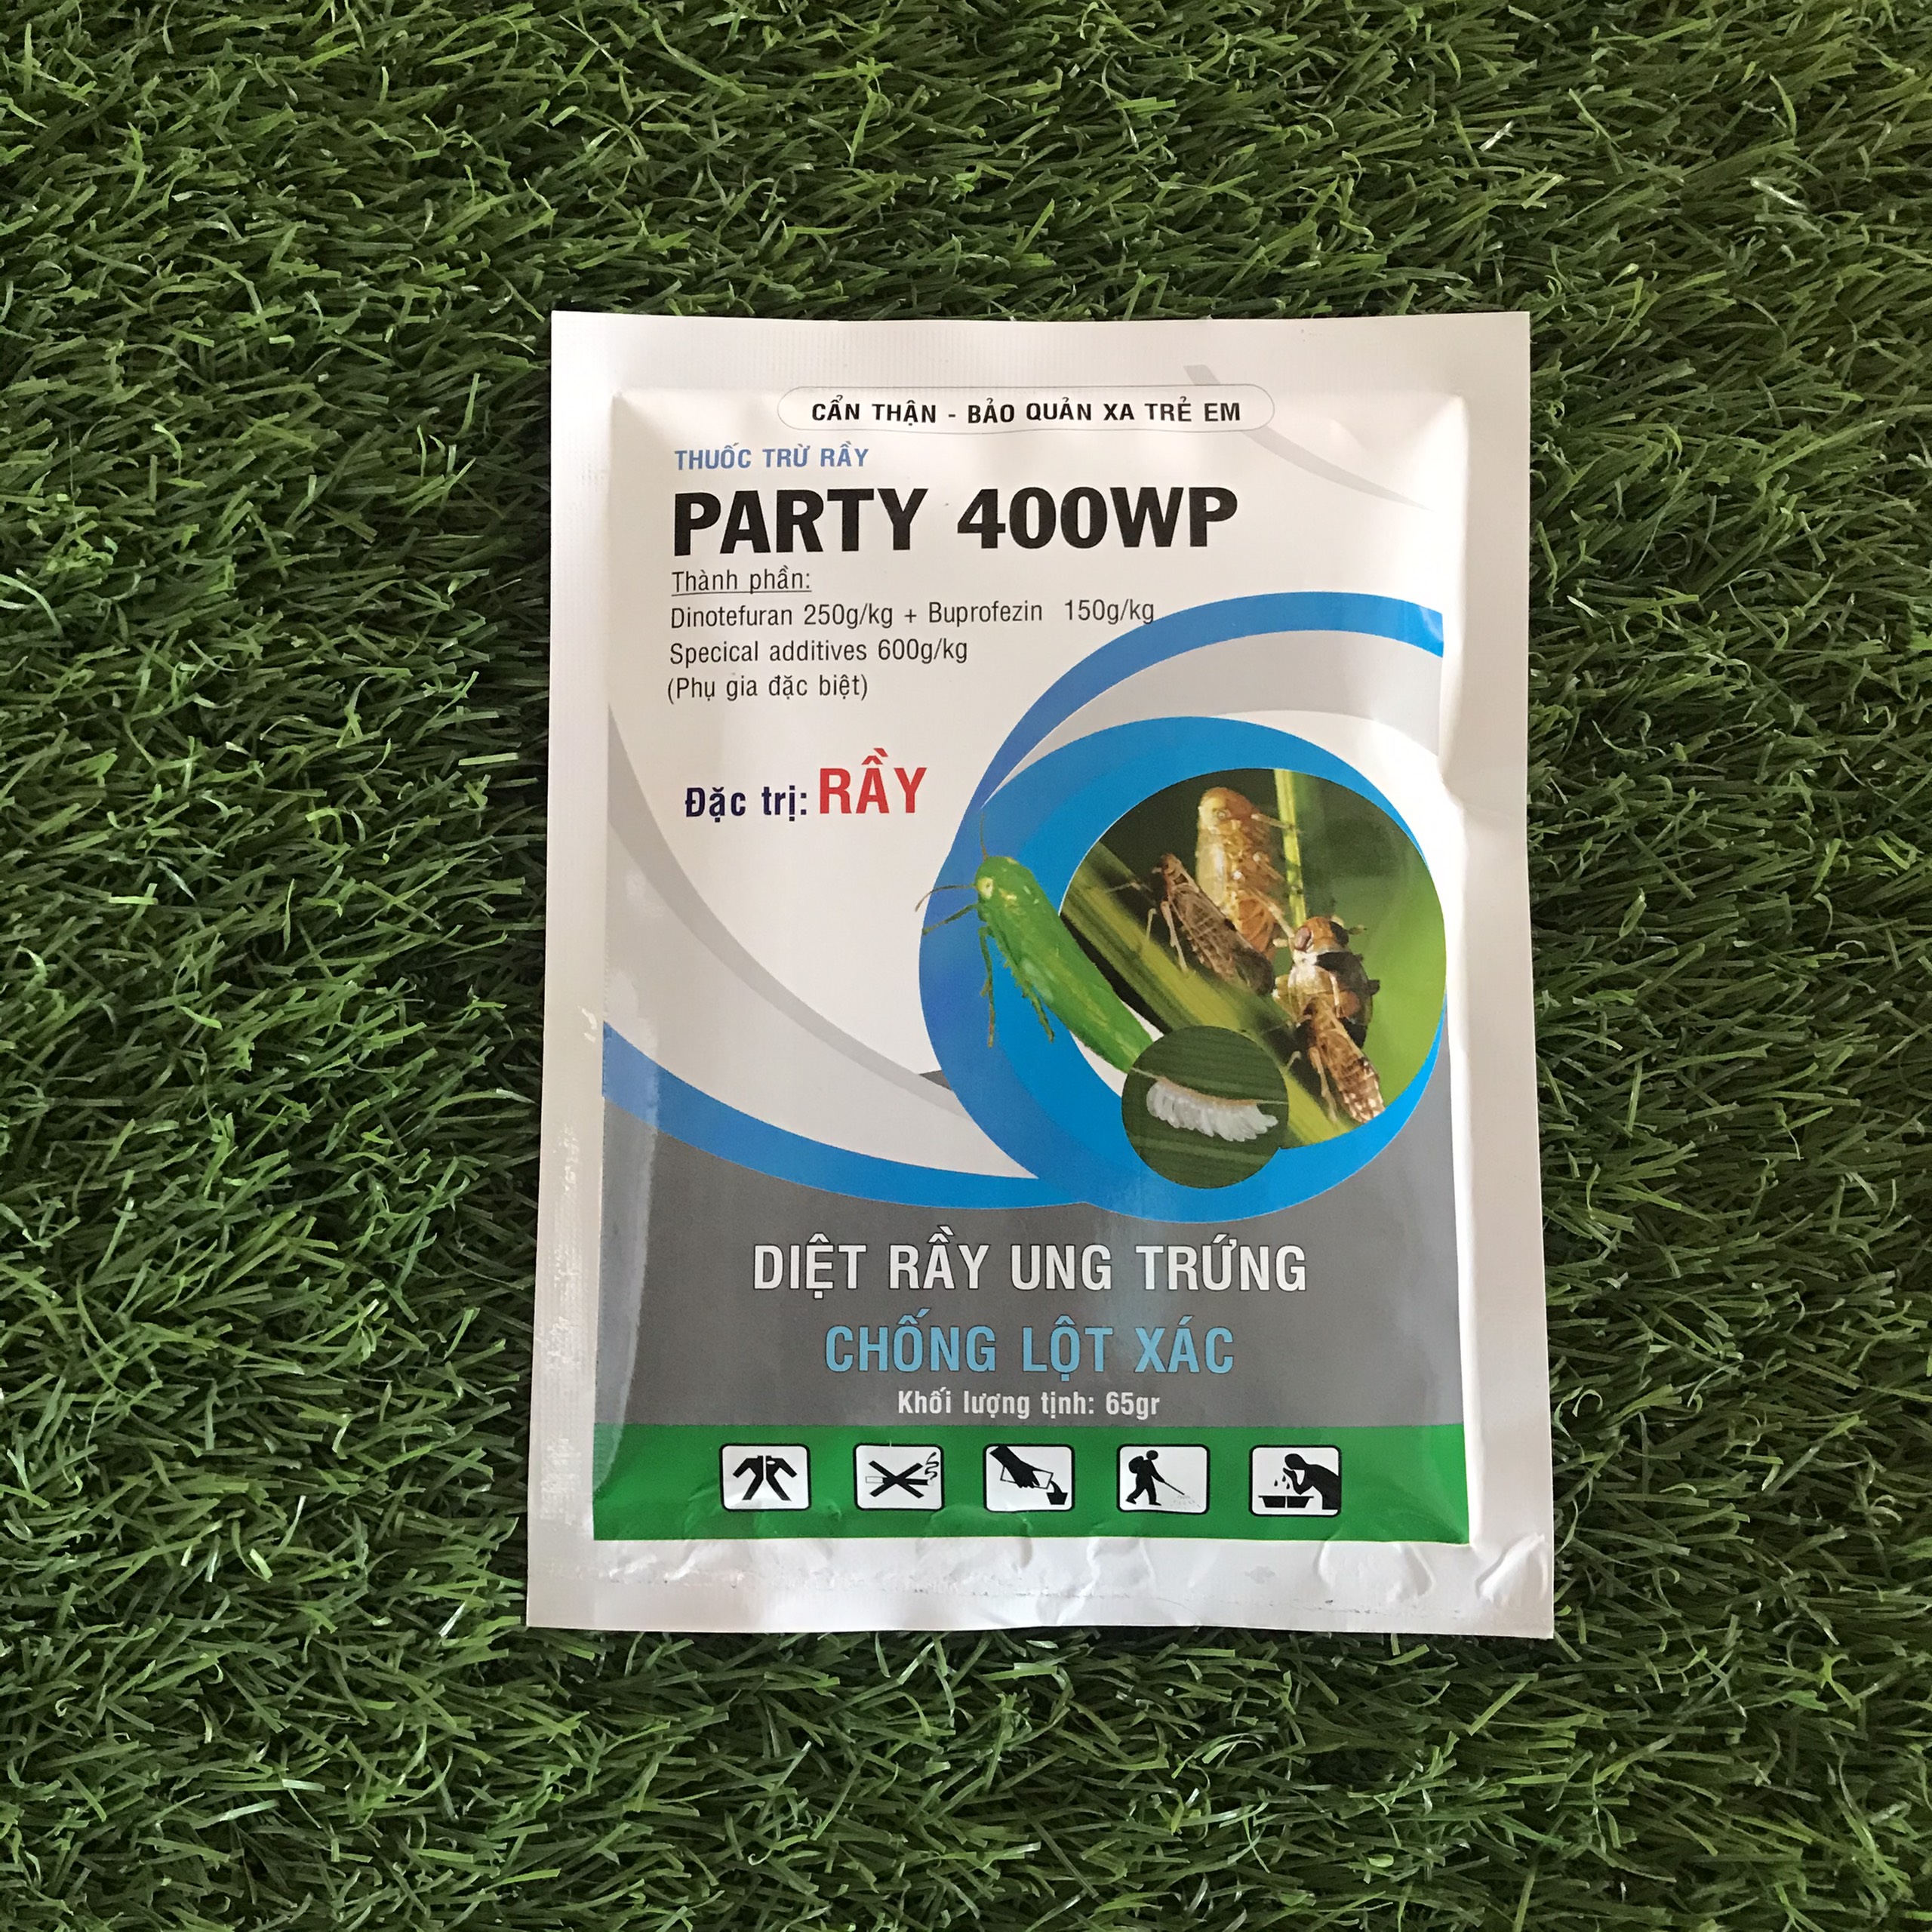 Thuốc đặc trị rầy Party 400WP - Gói 65g